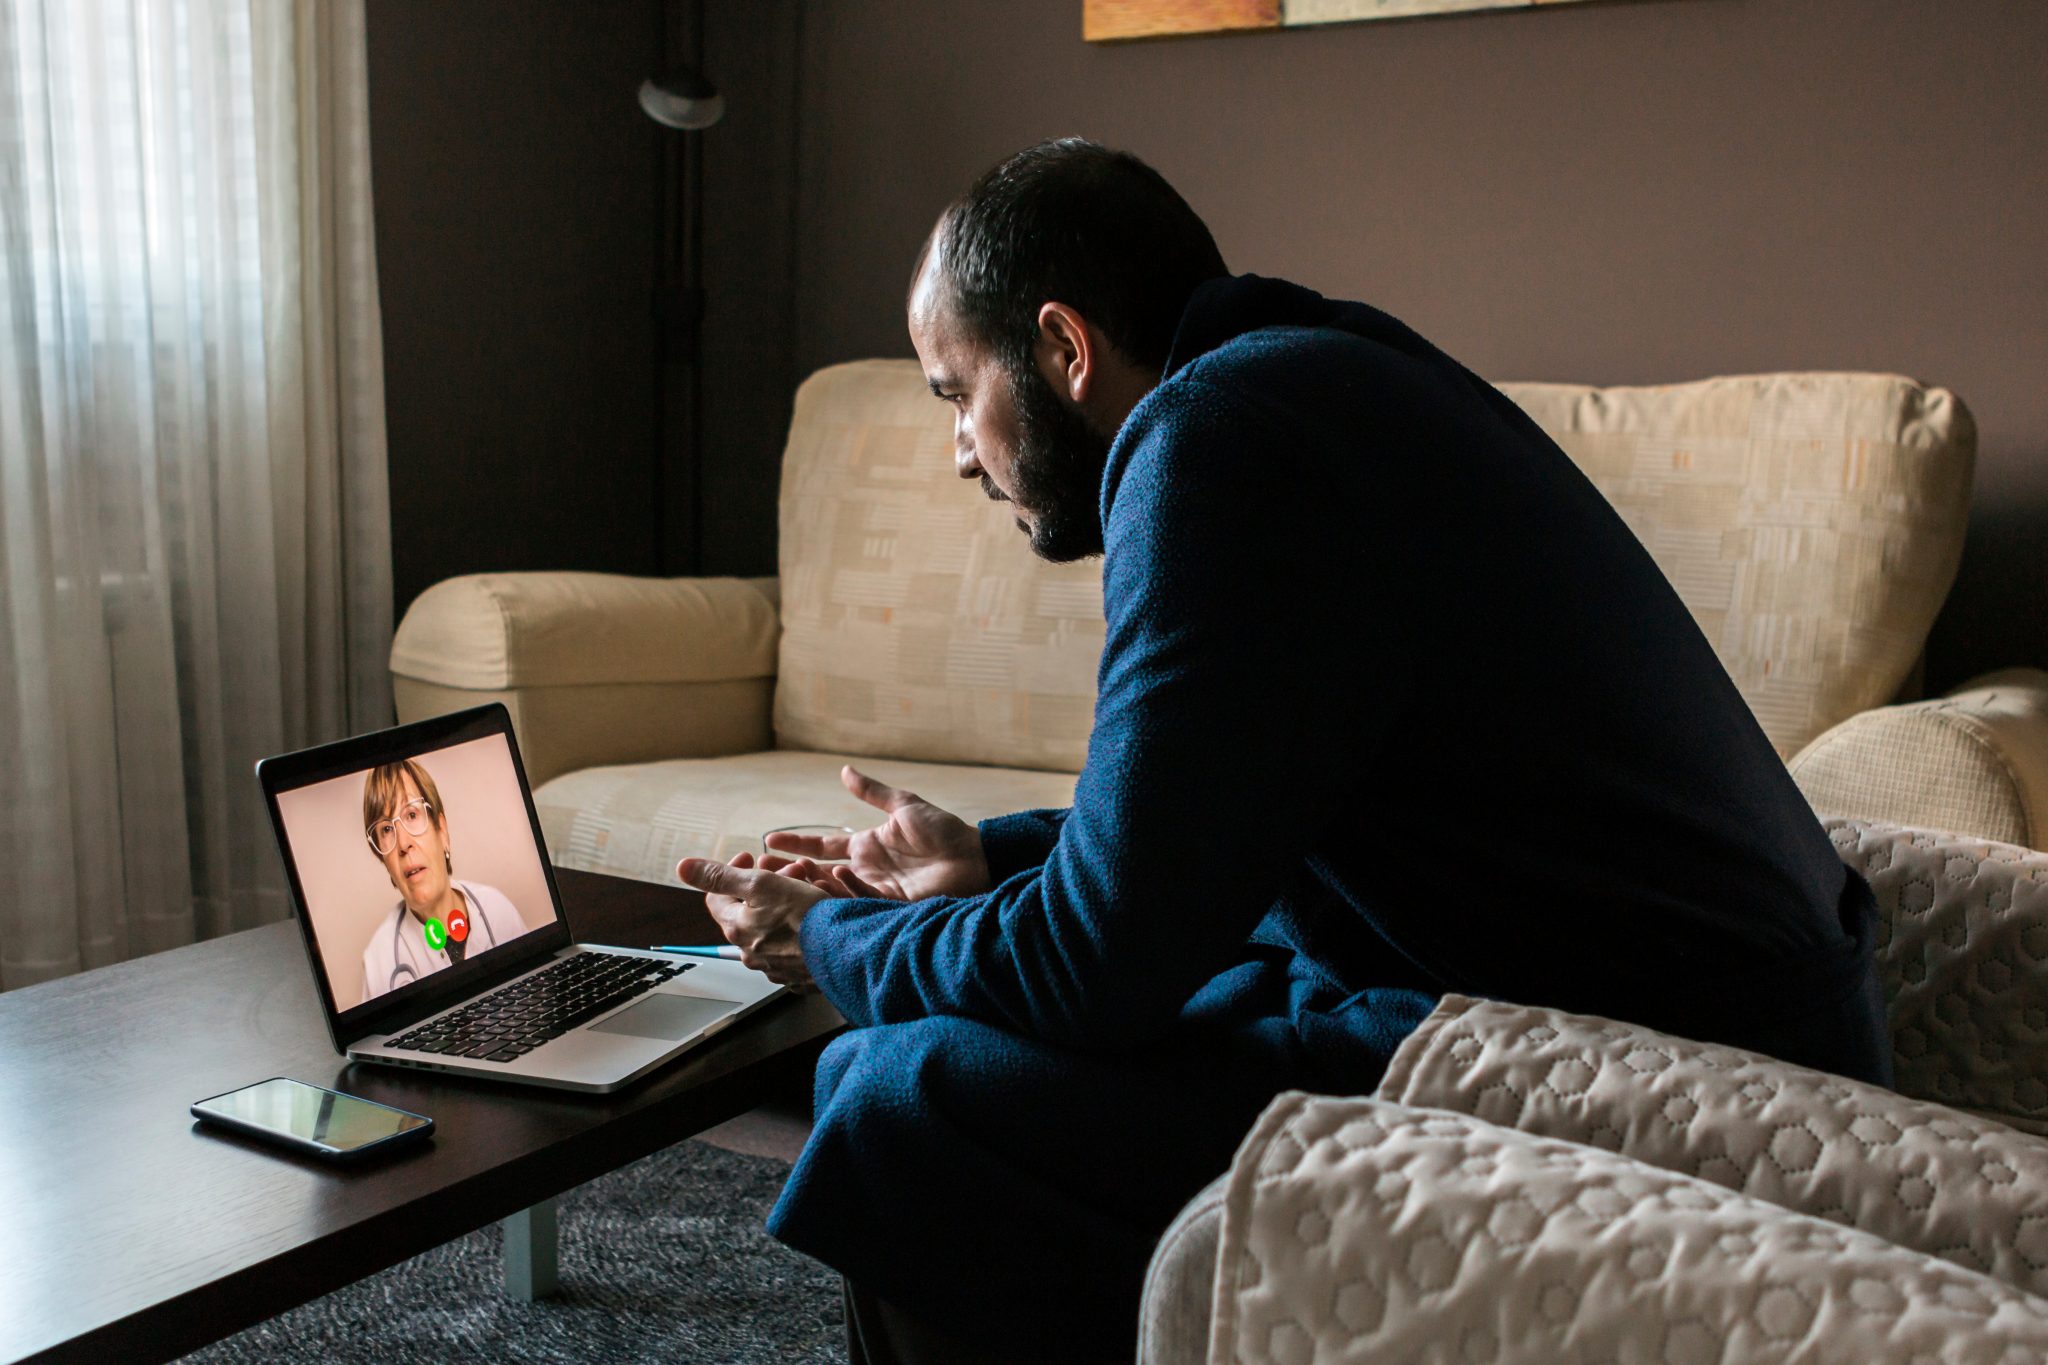 Homme en peignoir passant un appel vidéo sur un ordinateur portable dans une pièce faiblement éclairée.